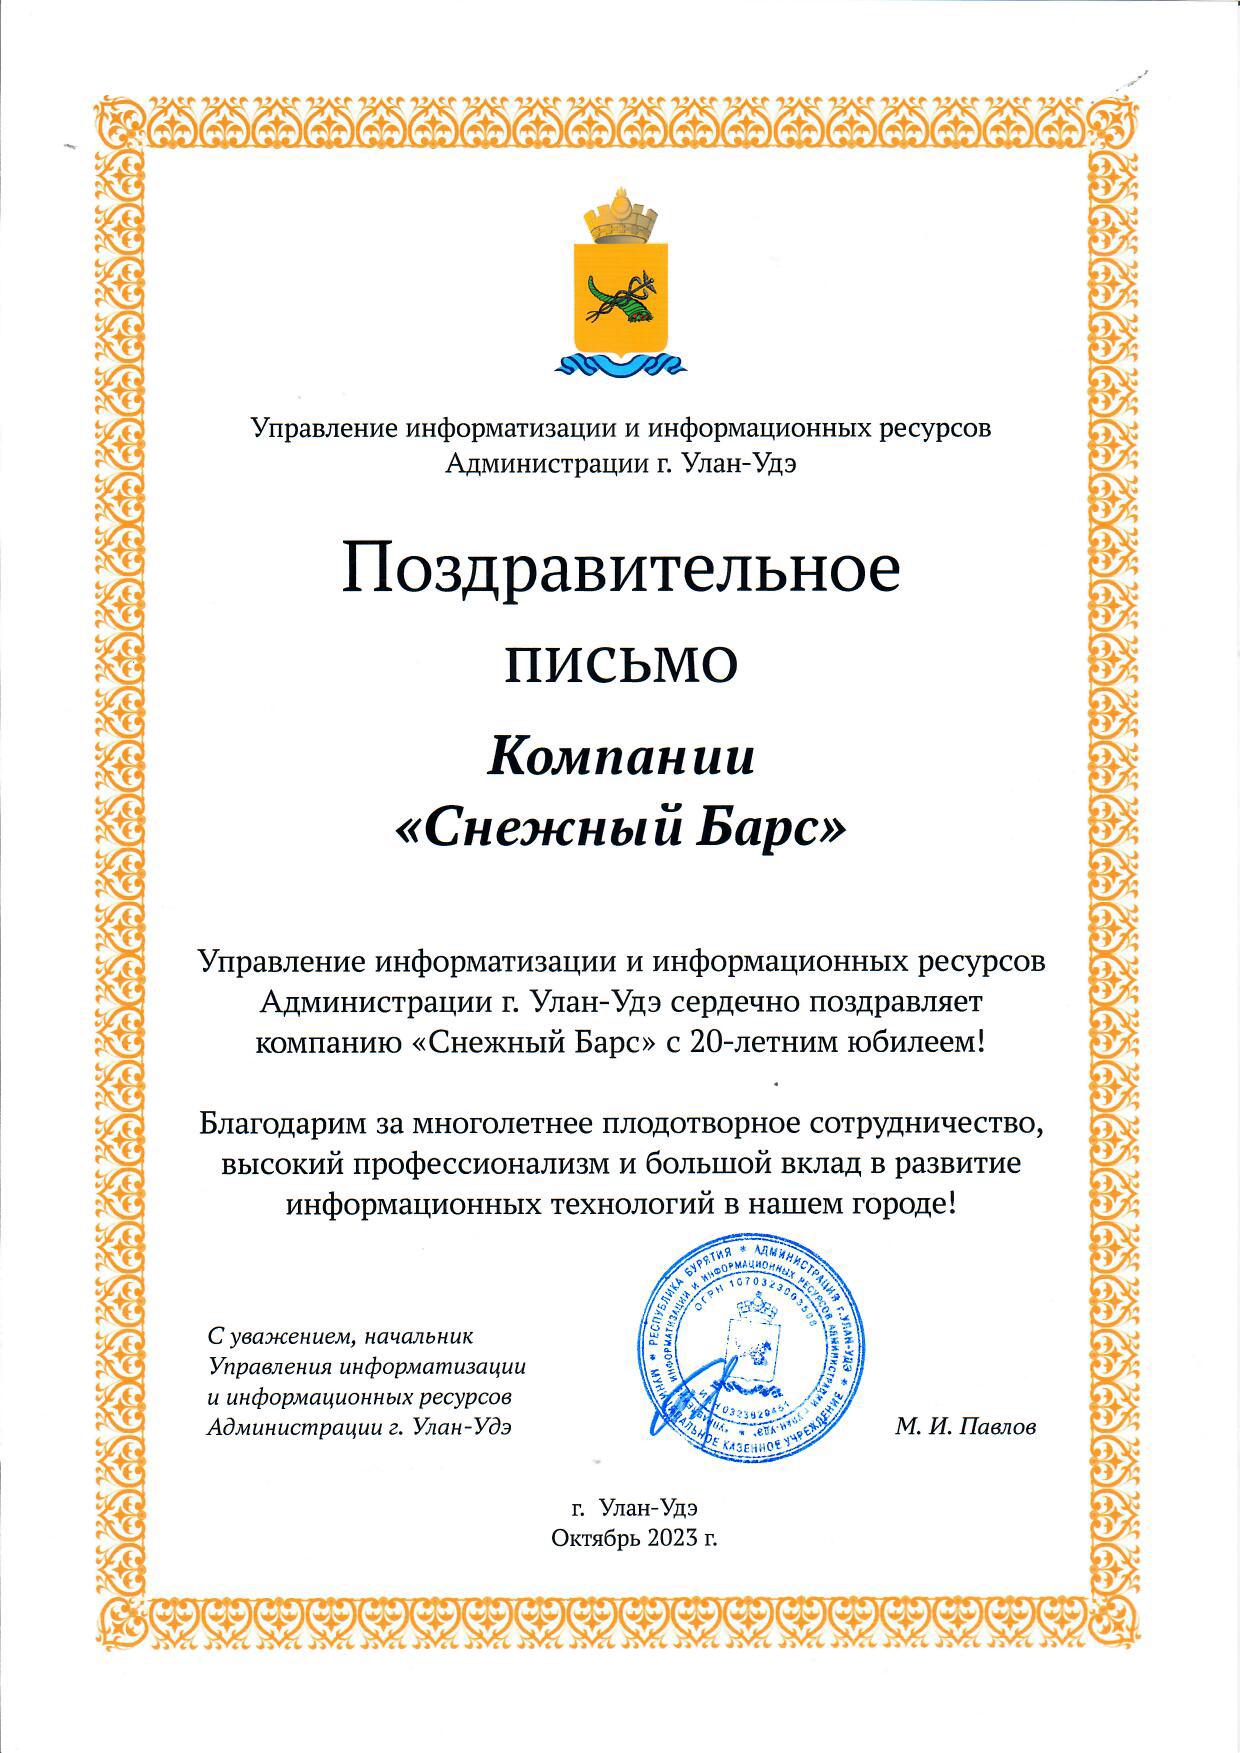 Поздравительное письмо от управления информатизации и информационных ресурсов Администрации города Улан-Удэ